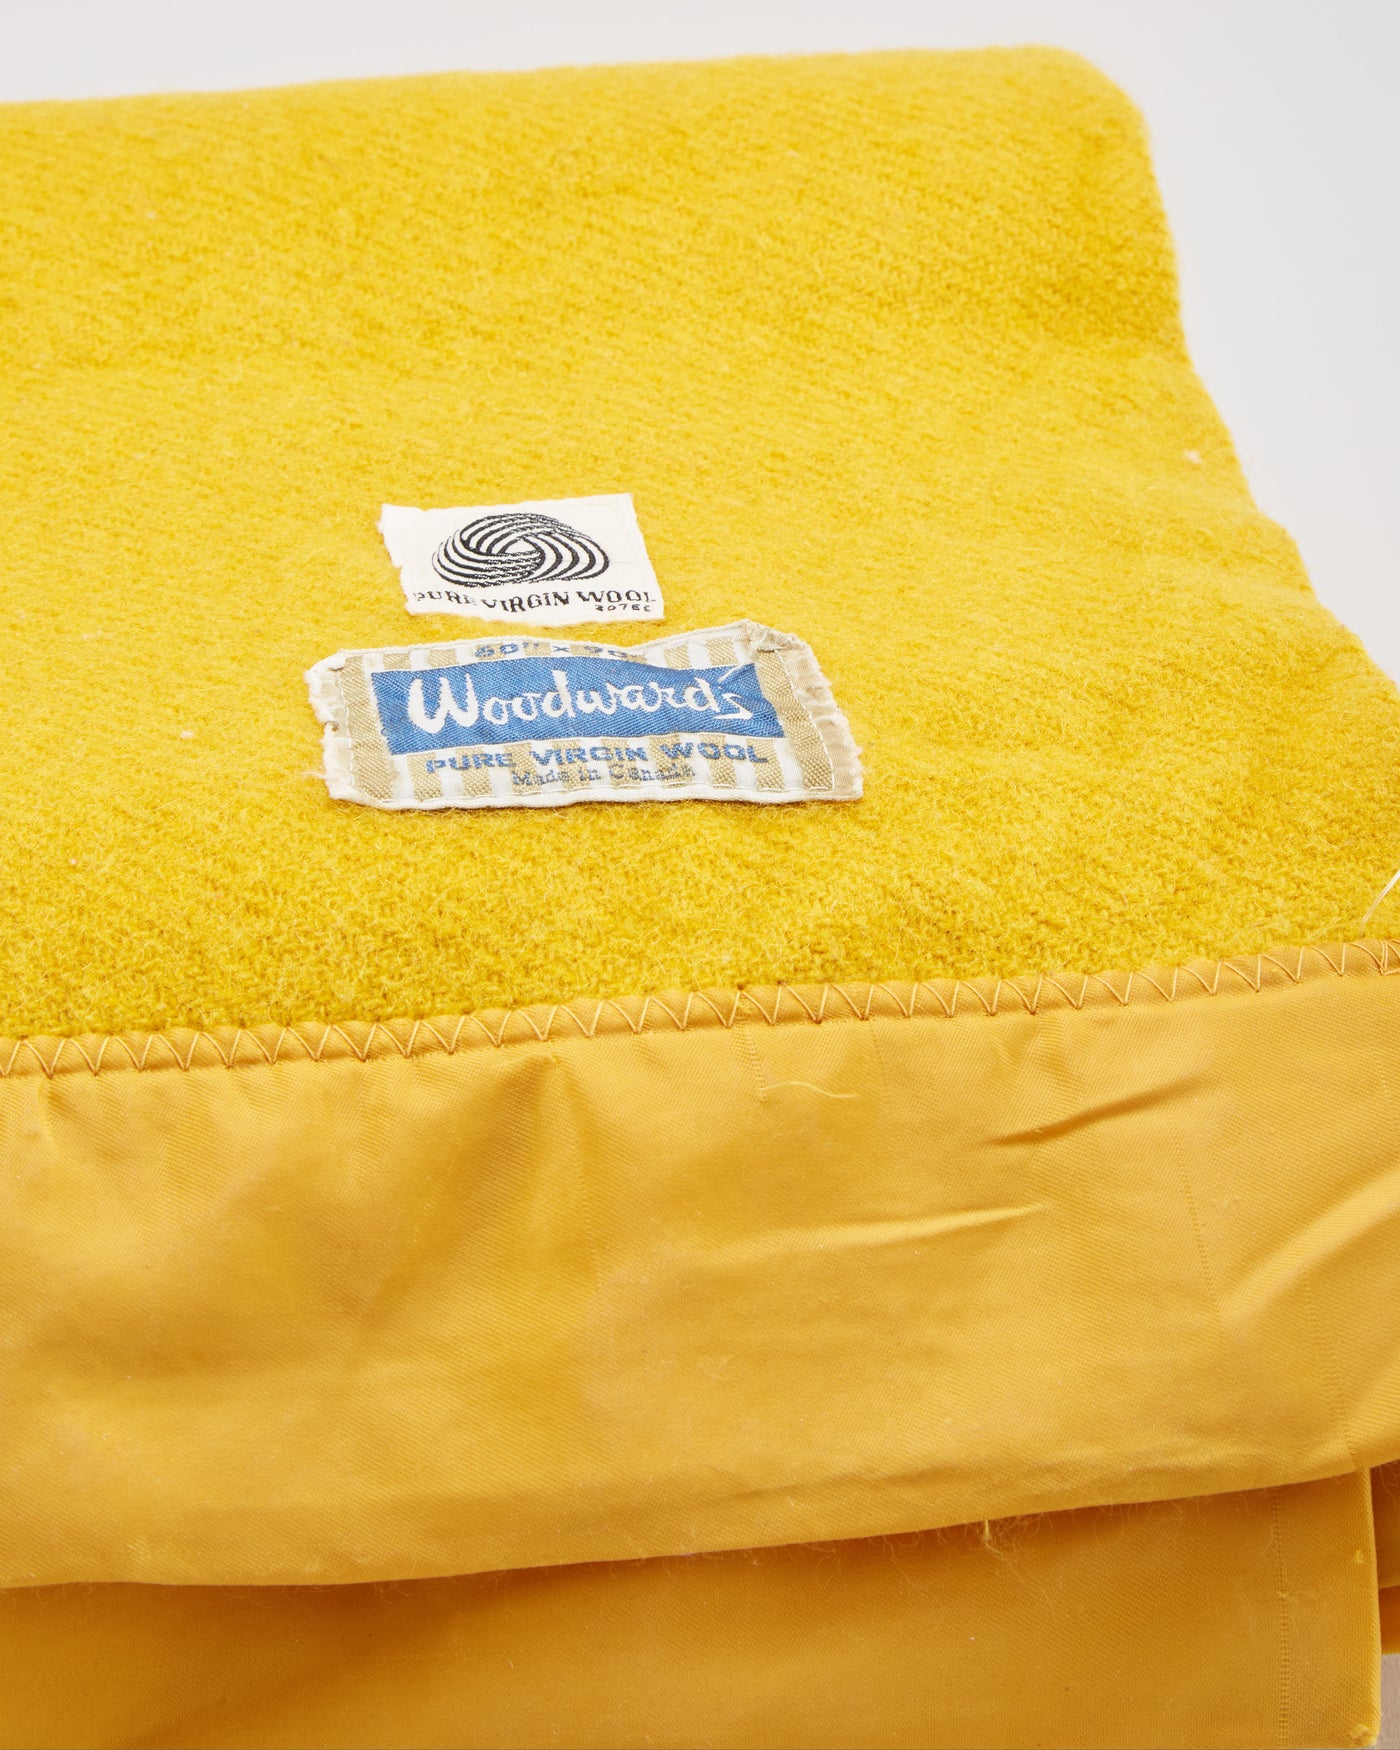 Vintage 1960s Mustard Yellow Wool Blanket